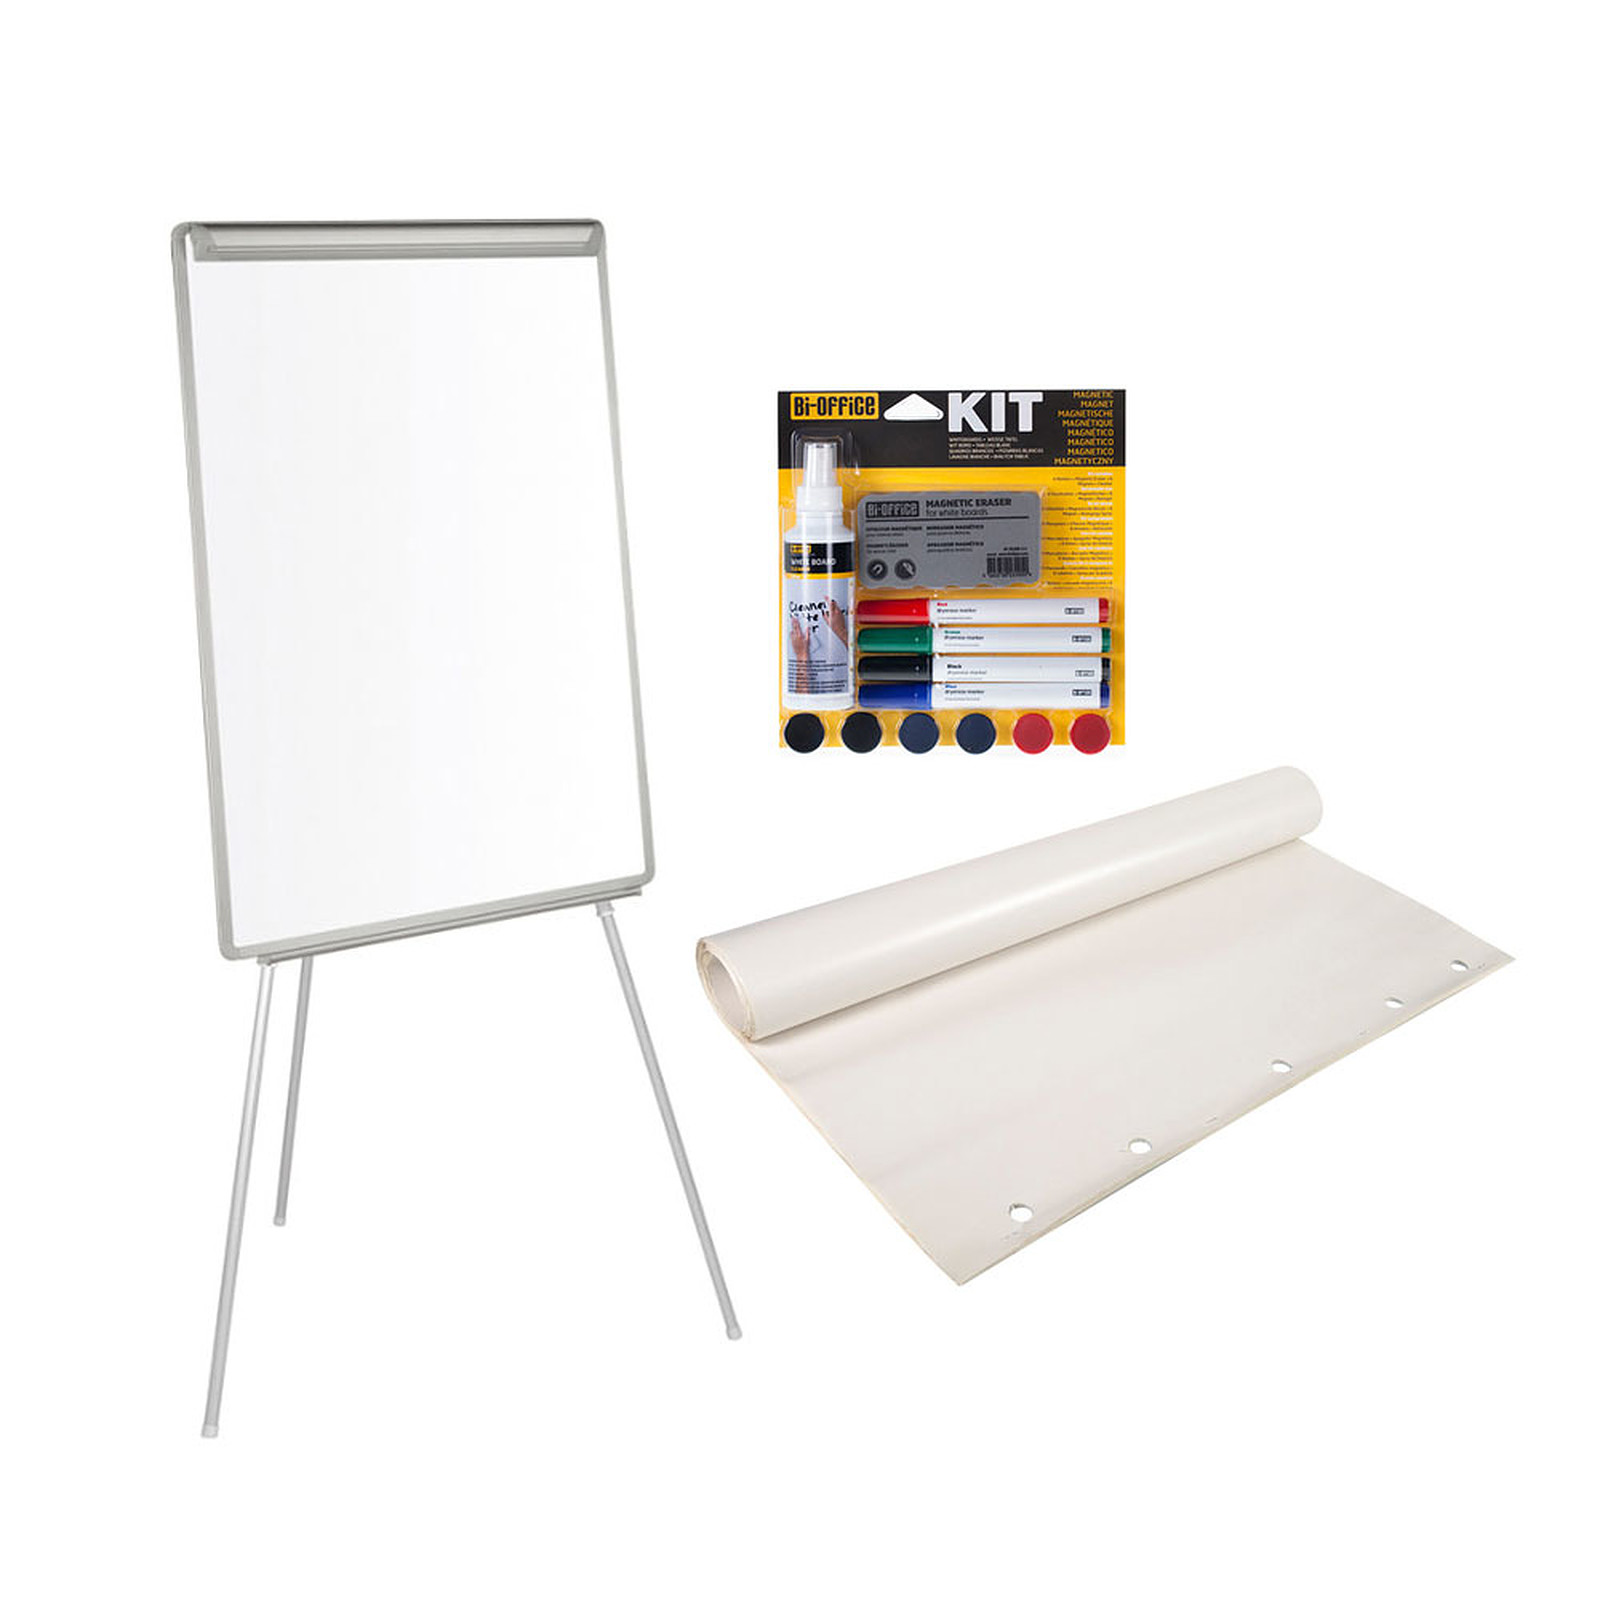 Bi-Office Chevalet de conference laque 70 x 100 cm + Kit magnetique + Recharge papier - Tableau blanc et paperboard Bi-Office